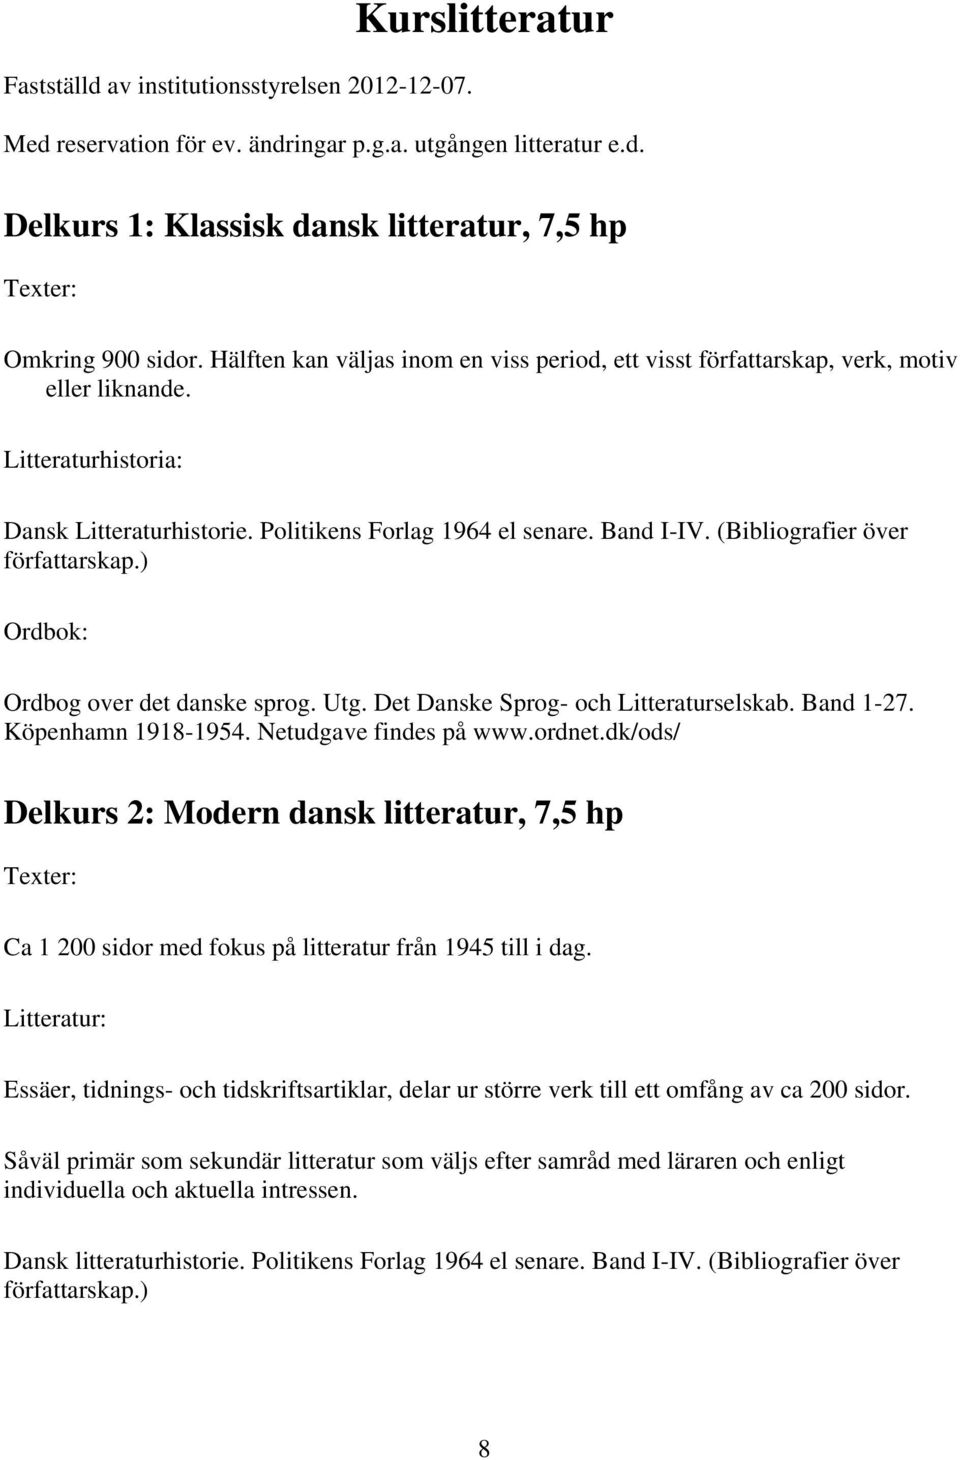 (Bibliografier över författarskap.) Ordbok: Ordbog over det danske sprog. Utg. Det Danske Sprog- och Litteraturselskab. Band 1-27. Köpenhamn 1918-1954. Netudgave findes på www.ordnet.